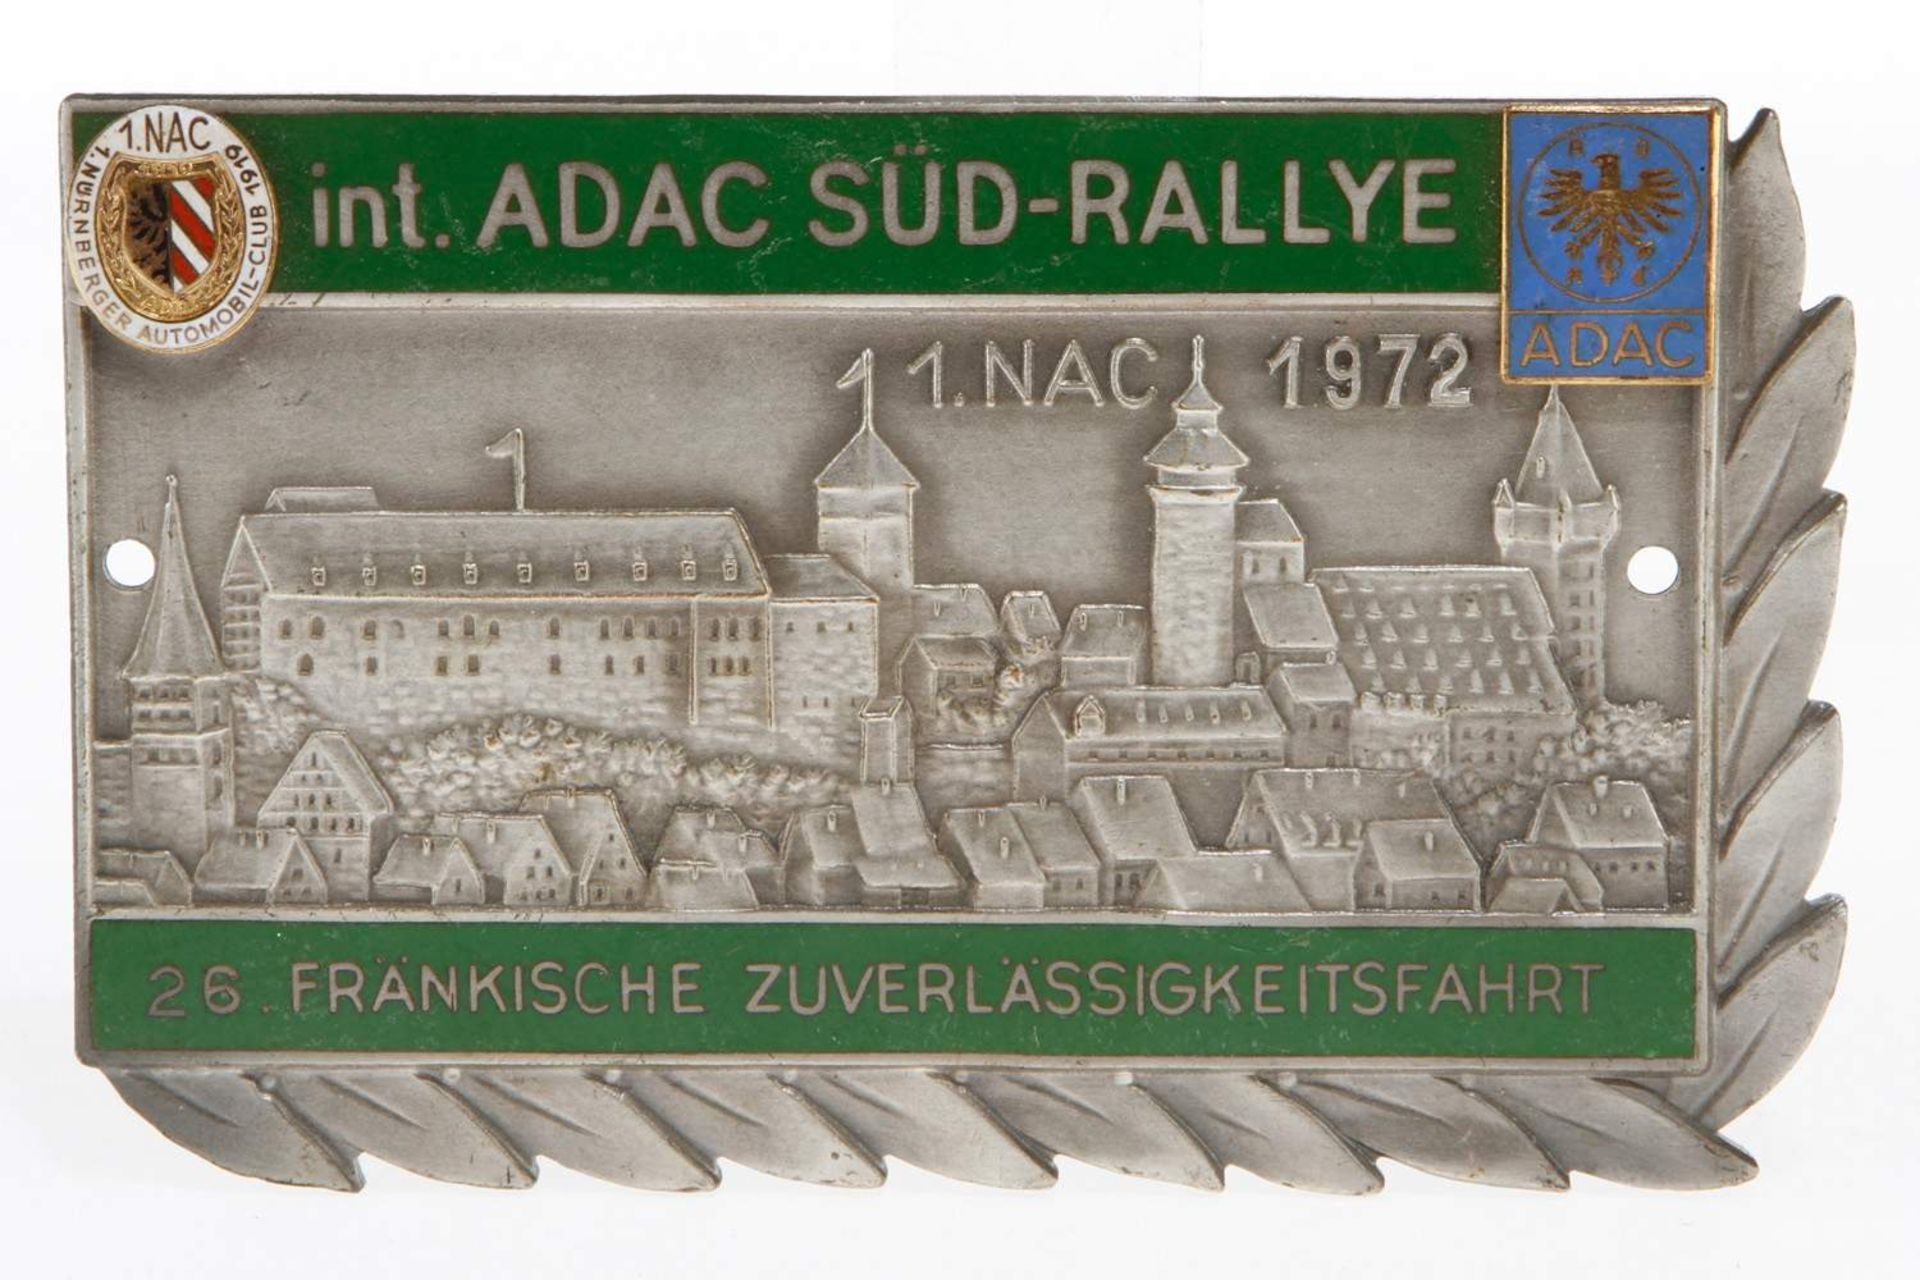 Plakette int. ADAC Süd-Rallye, 1. NAC 1972, teilweise emailliert, Alterungsspuren, Länge 11,5 cm